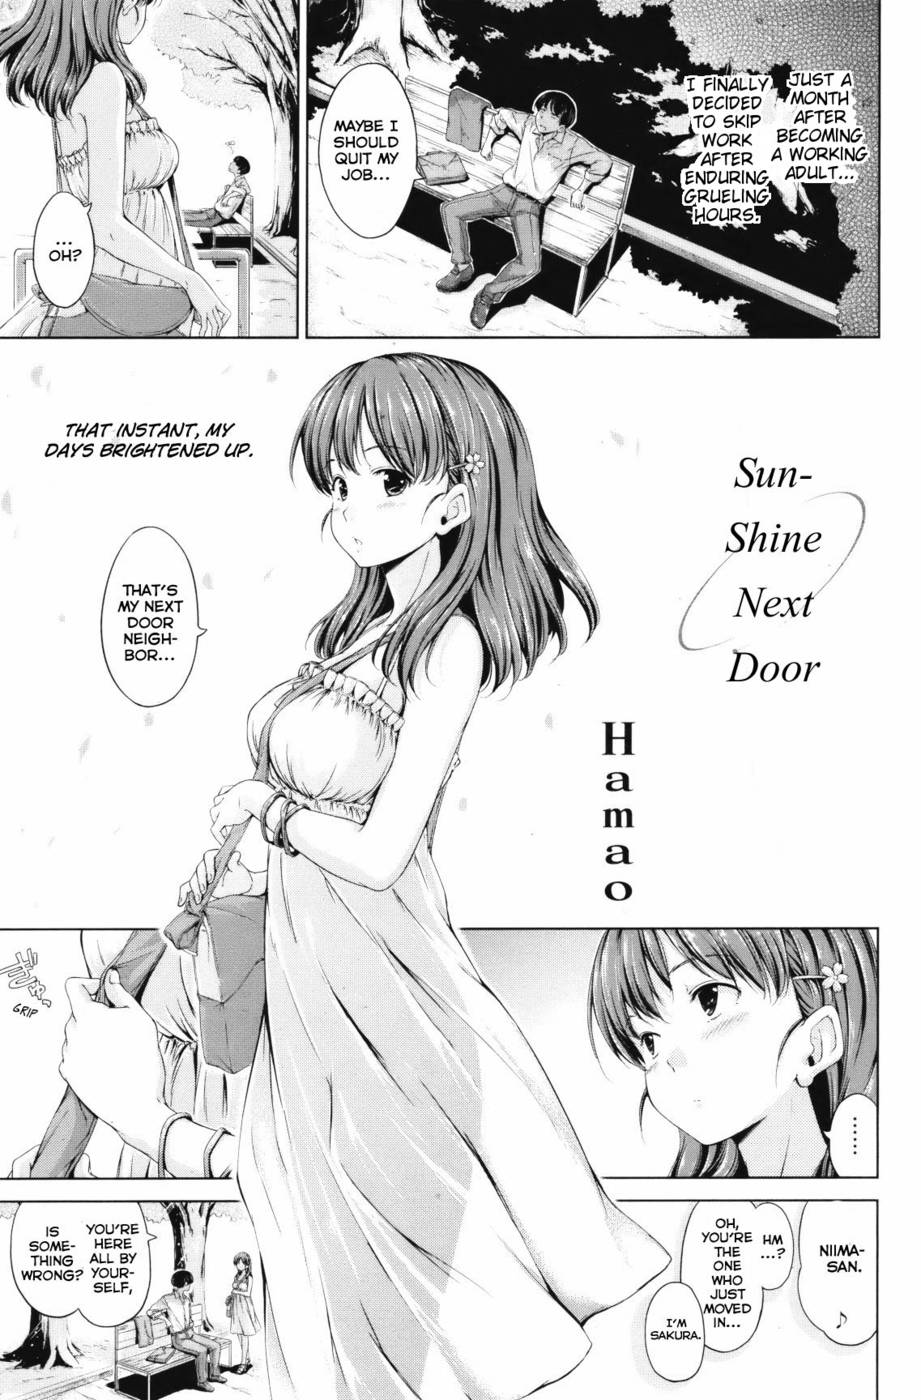 Hentai Manga Comic-Sunshine Next Door-Read-1